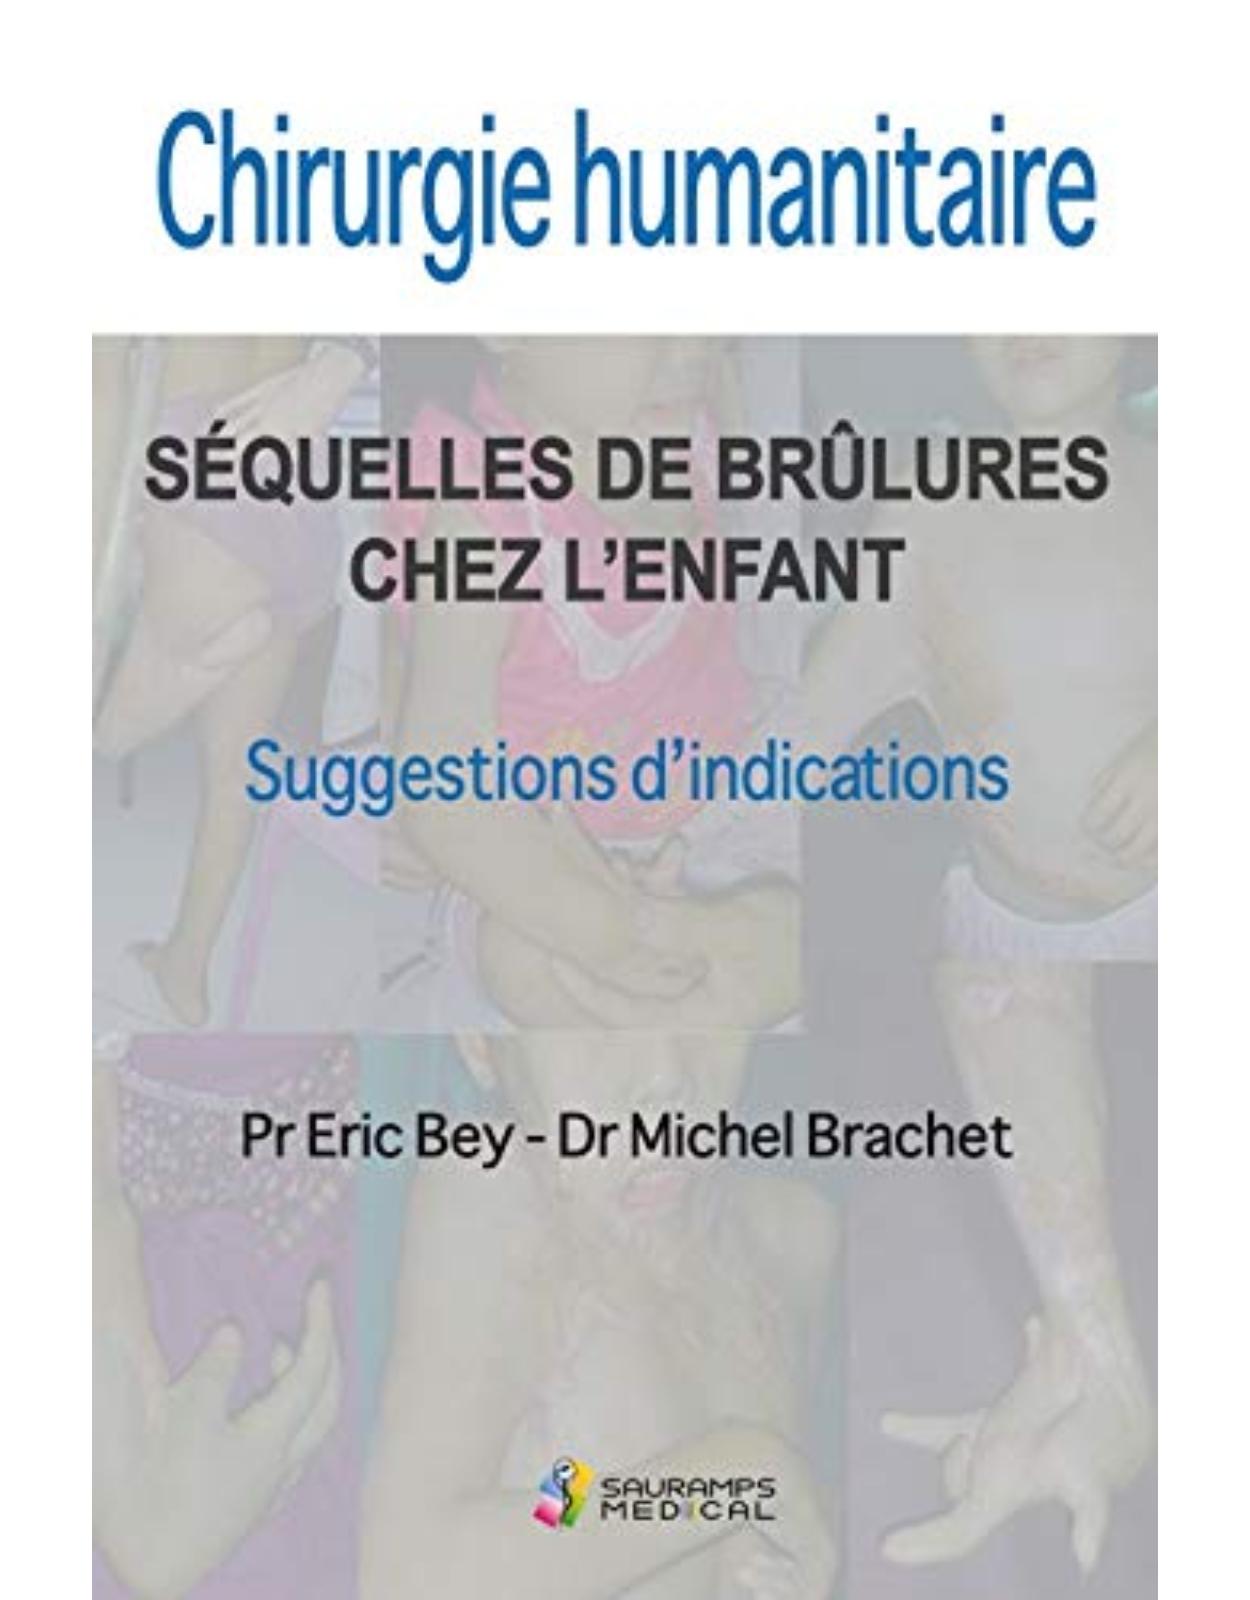 CHIRURGIE HUMANITAIRE. SEQUELLES DE BRULURES CHEZ L'ENFANT